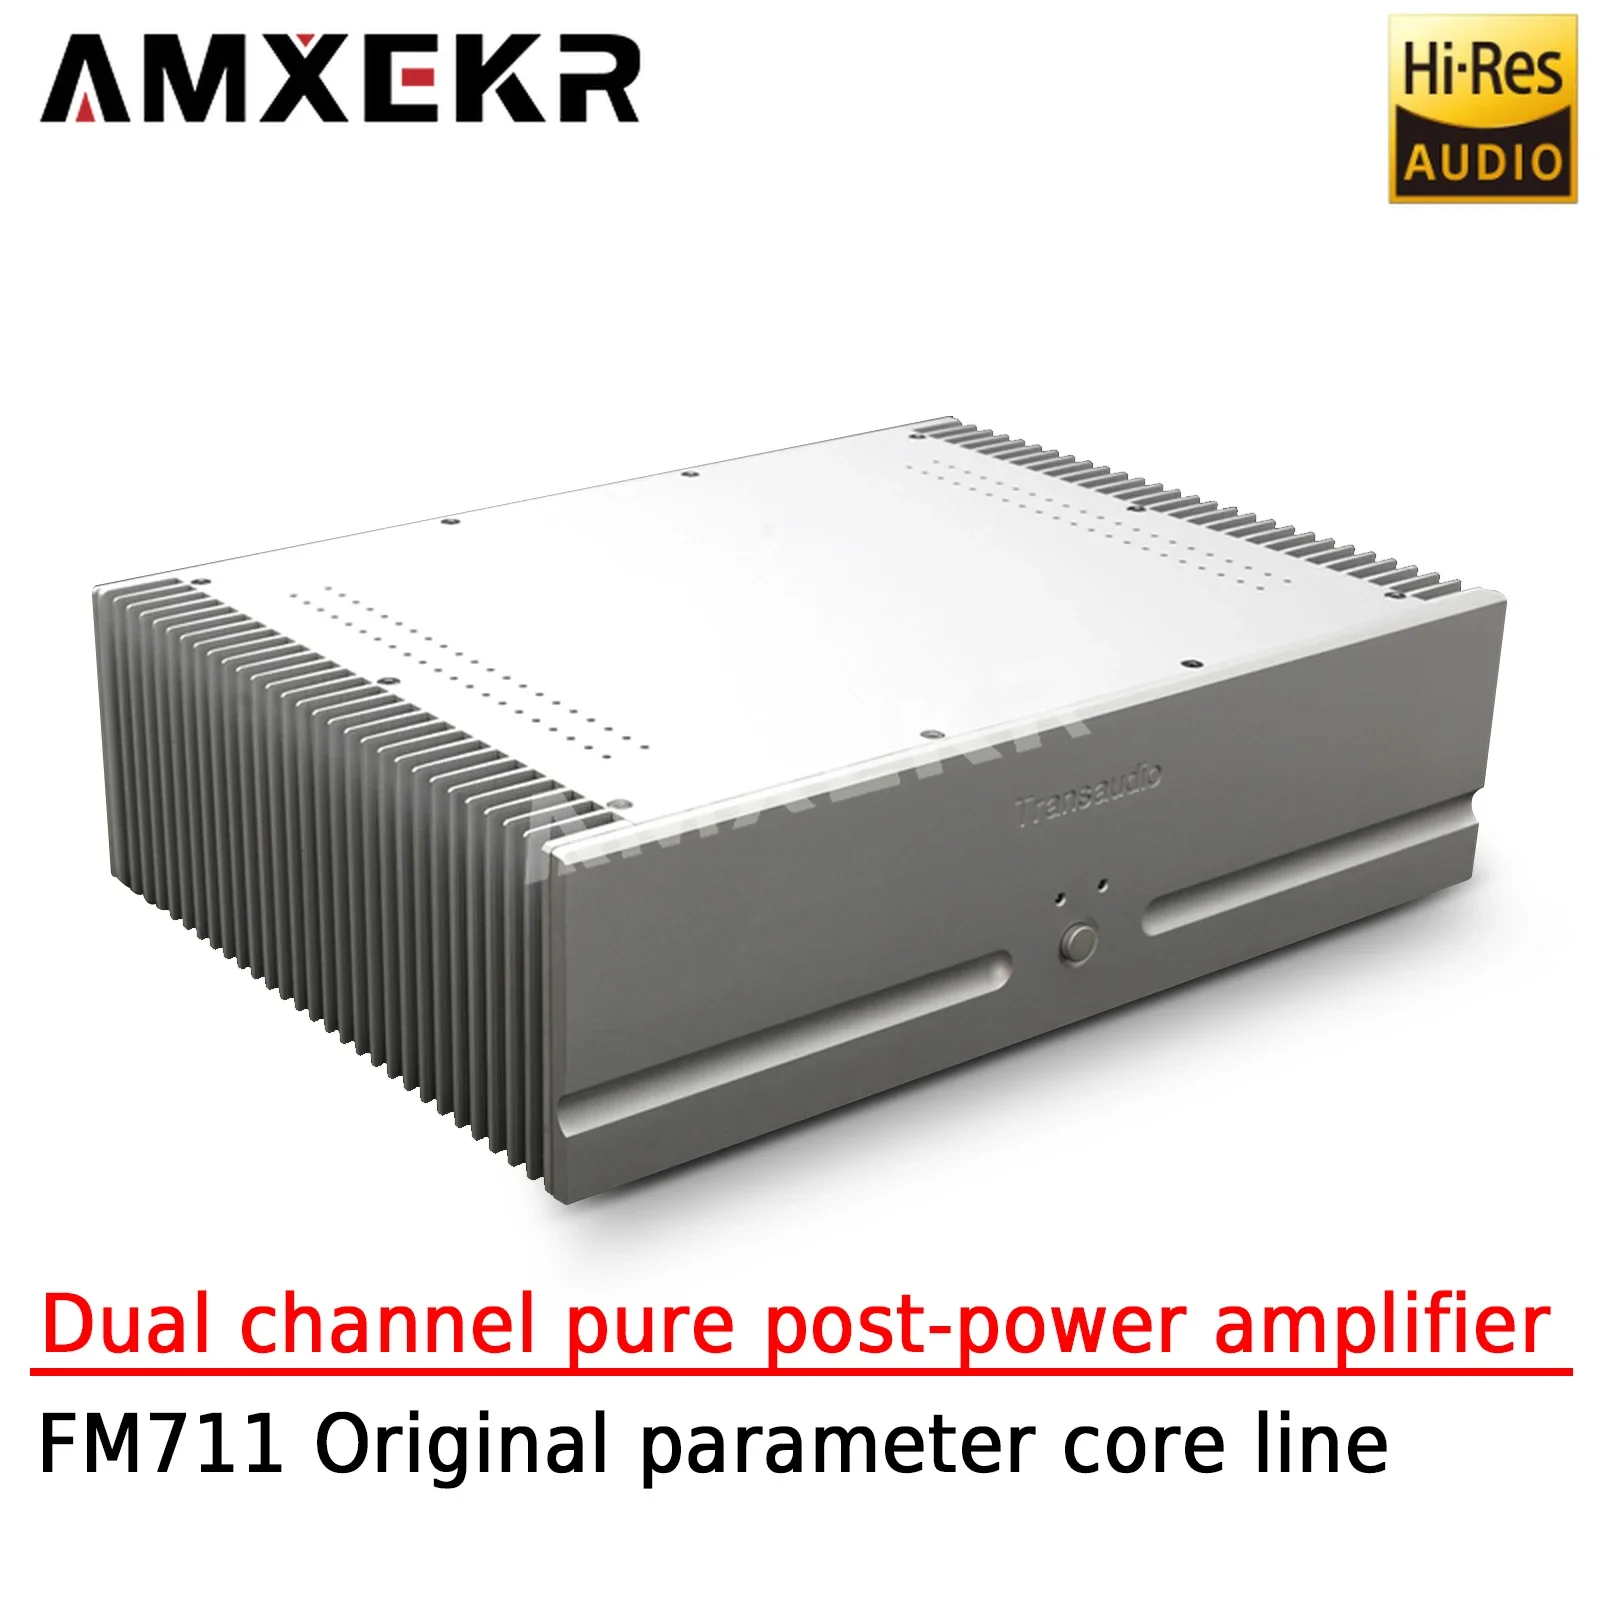 

AMXEKR FM711 Fever Level Dual Channel Pure Rear Power Amplifier F7 Original Parameters Core Line 2N3440/5416